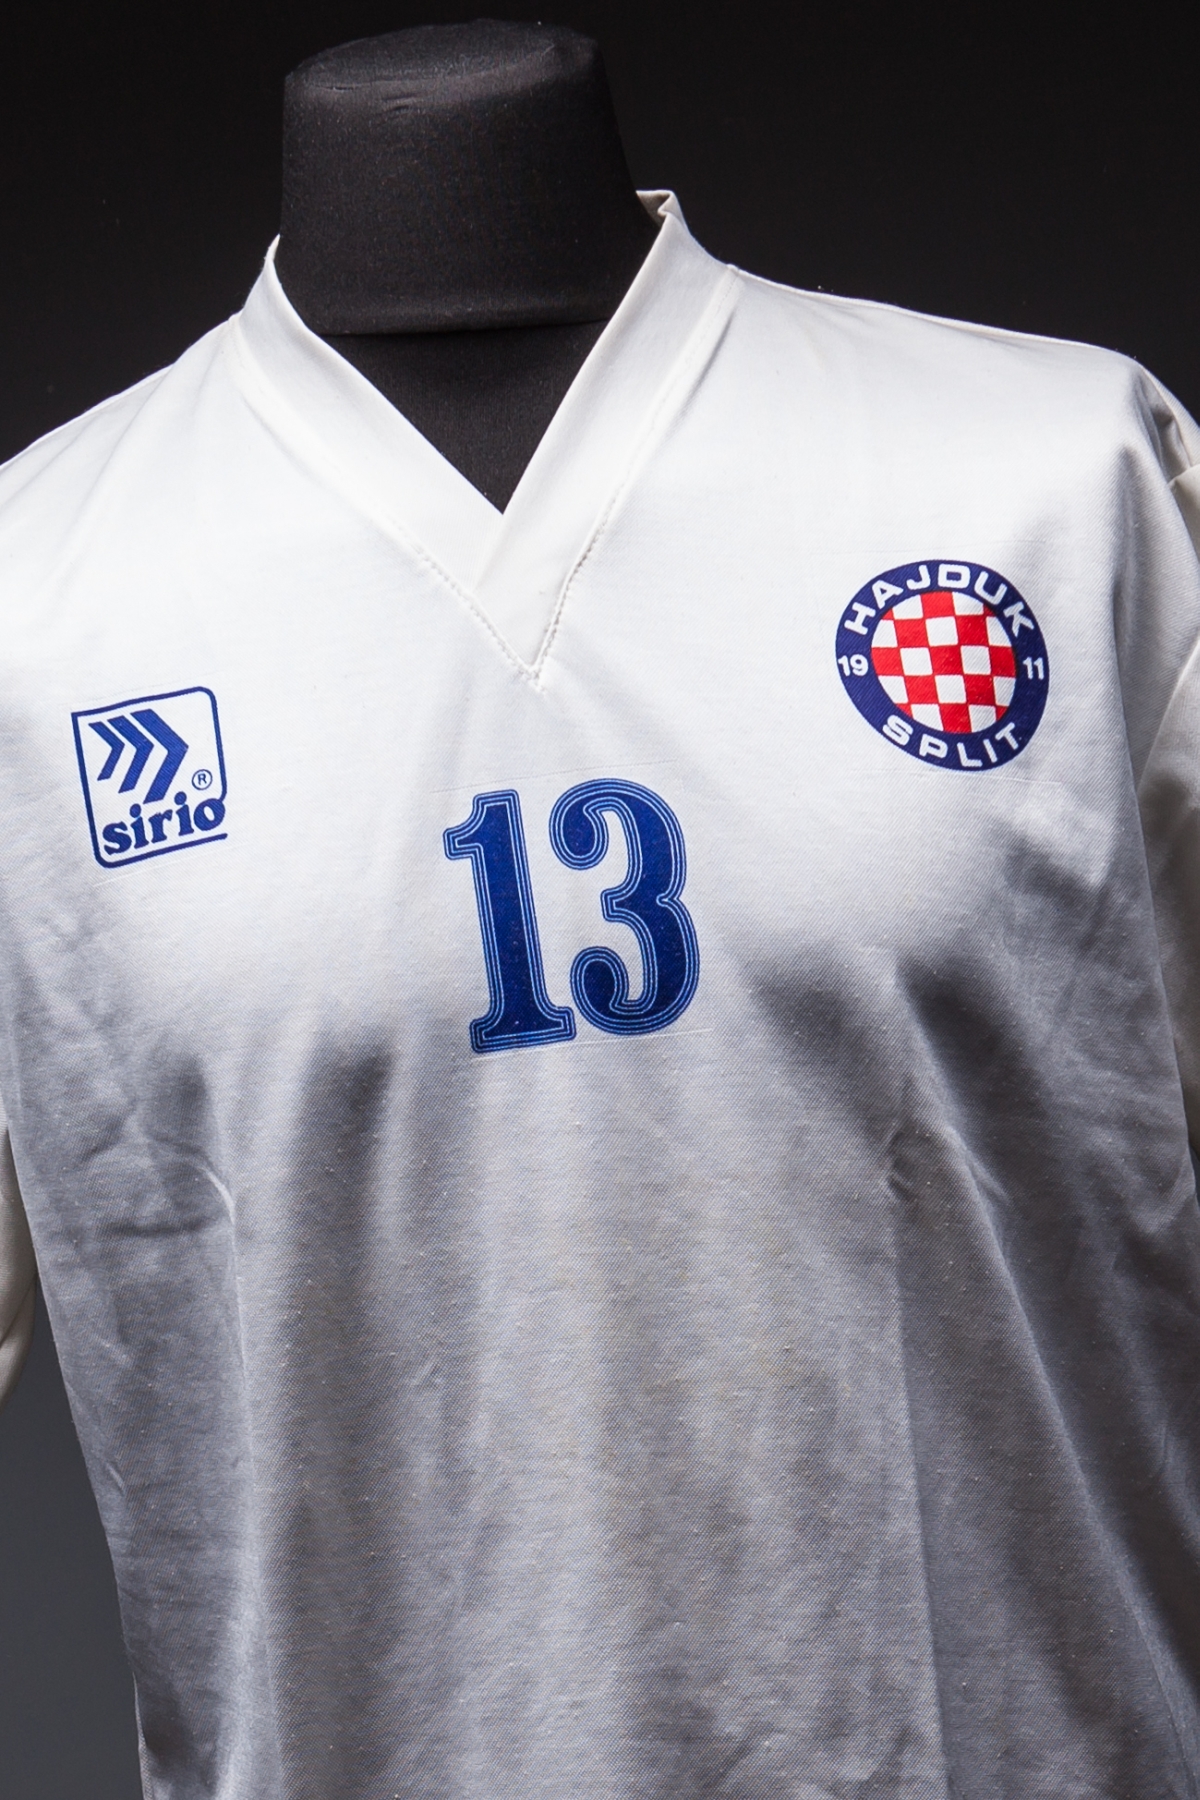 Hajduk Split home football shirt 1993/94